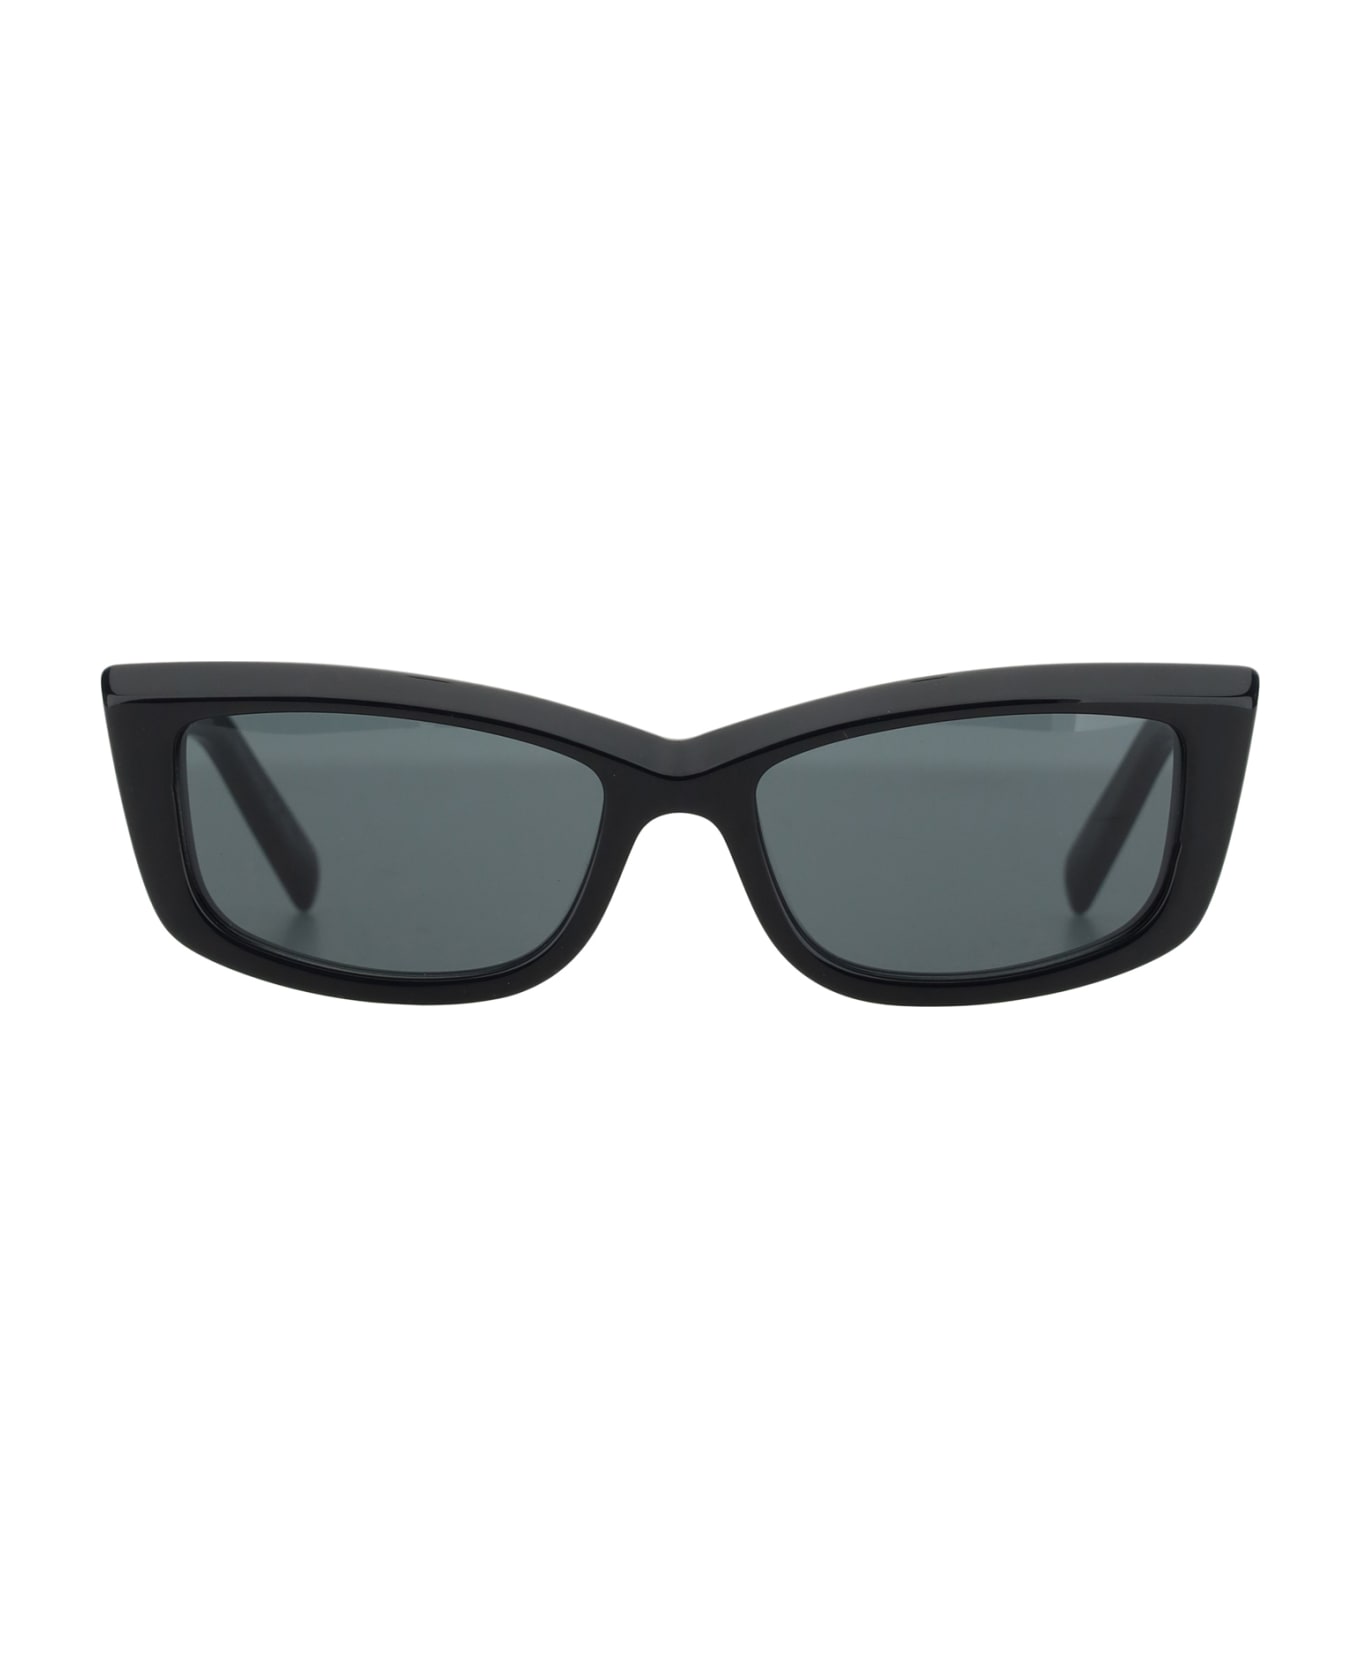 Saint Laurent Sunglasses 658 - Black Black Black サングラス